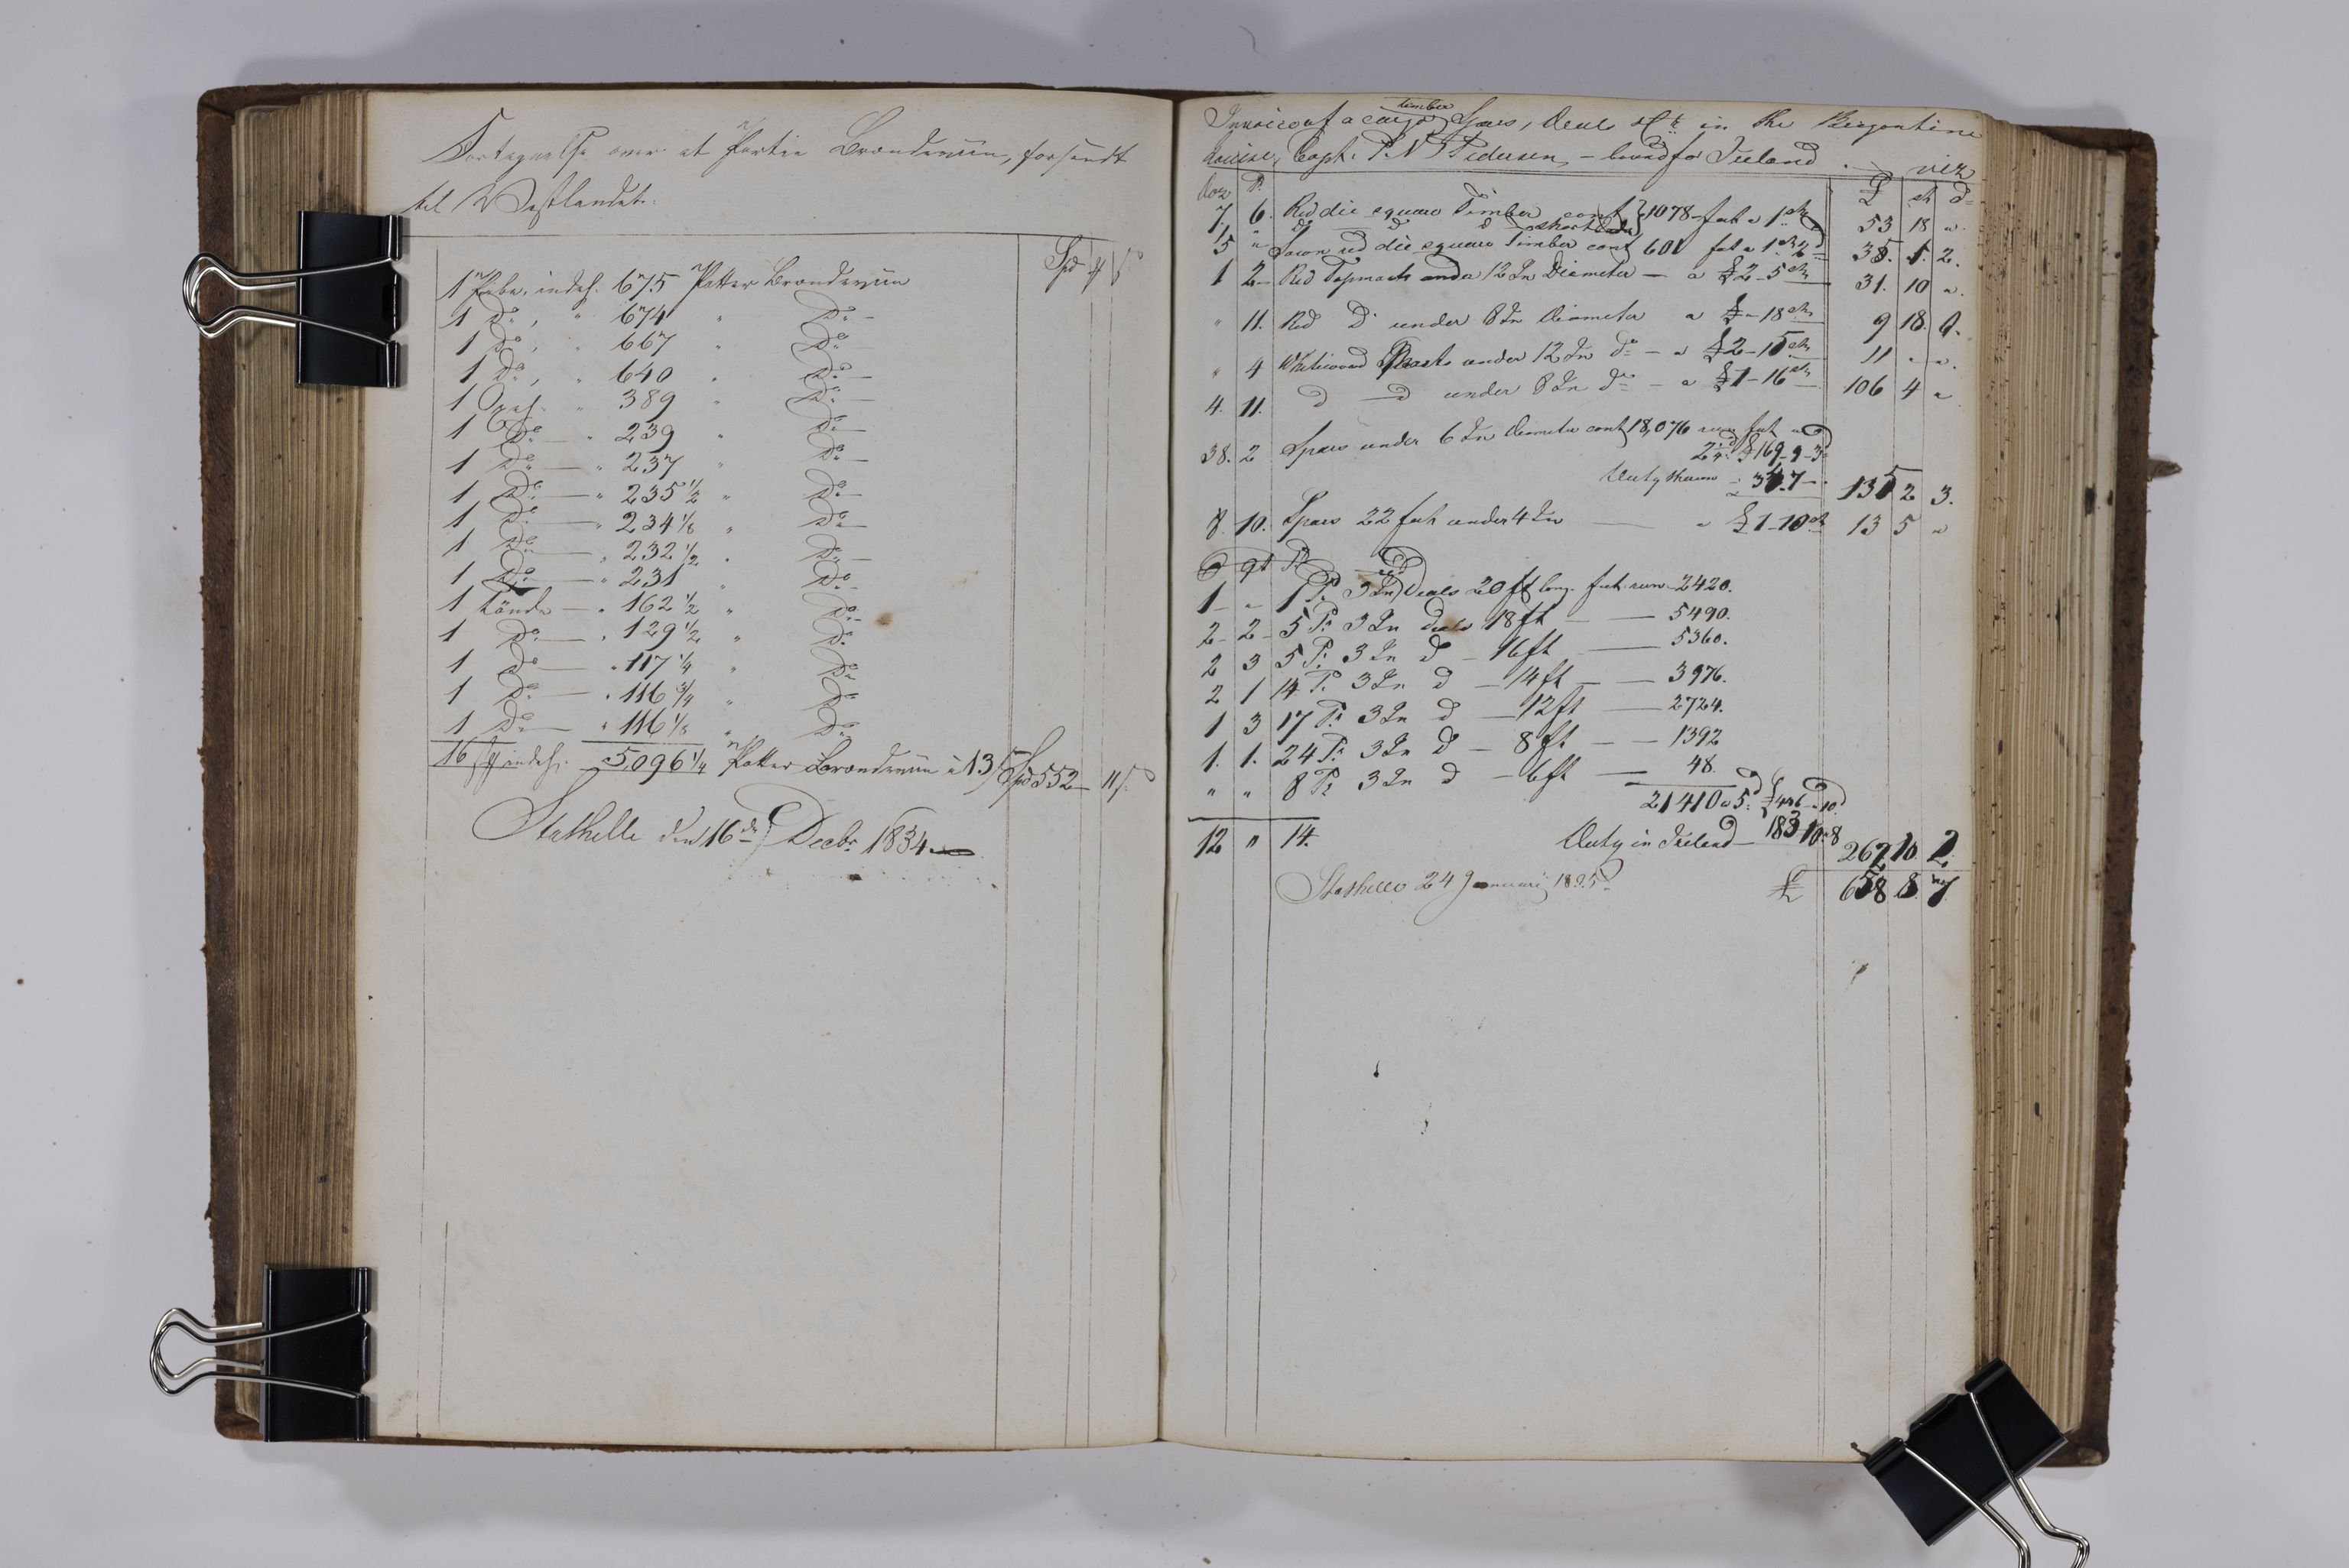 , Priscourant-tømmerpriser, 1834-38, 1834-1838, s. 166